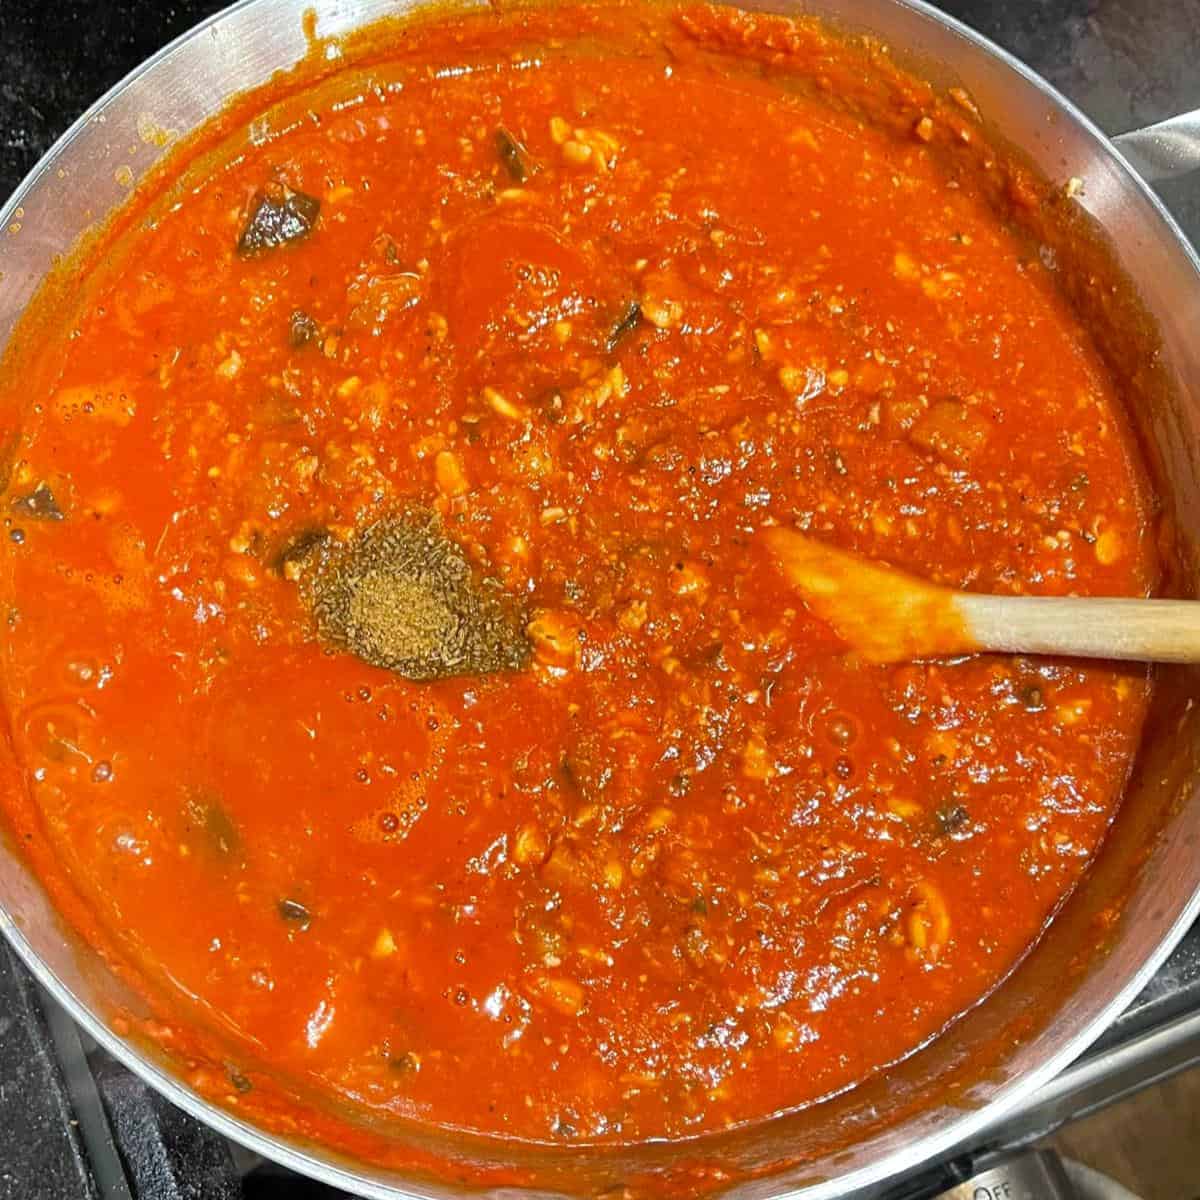 Cumin and paprika added to marinara sauce.